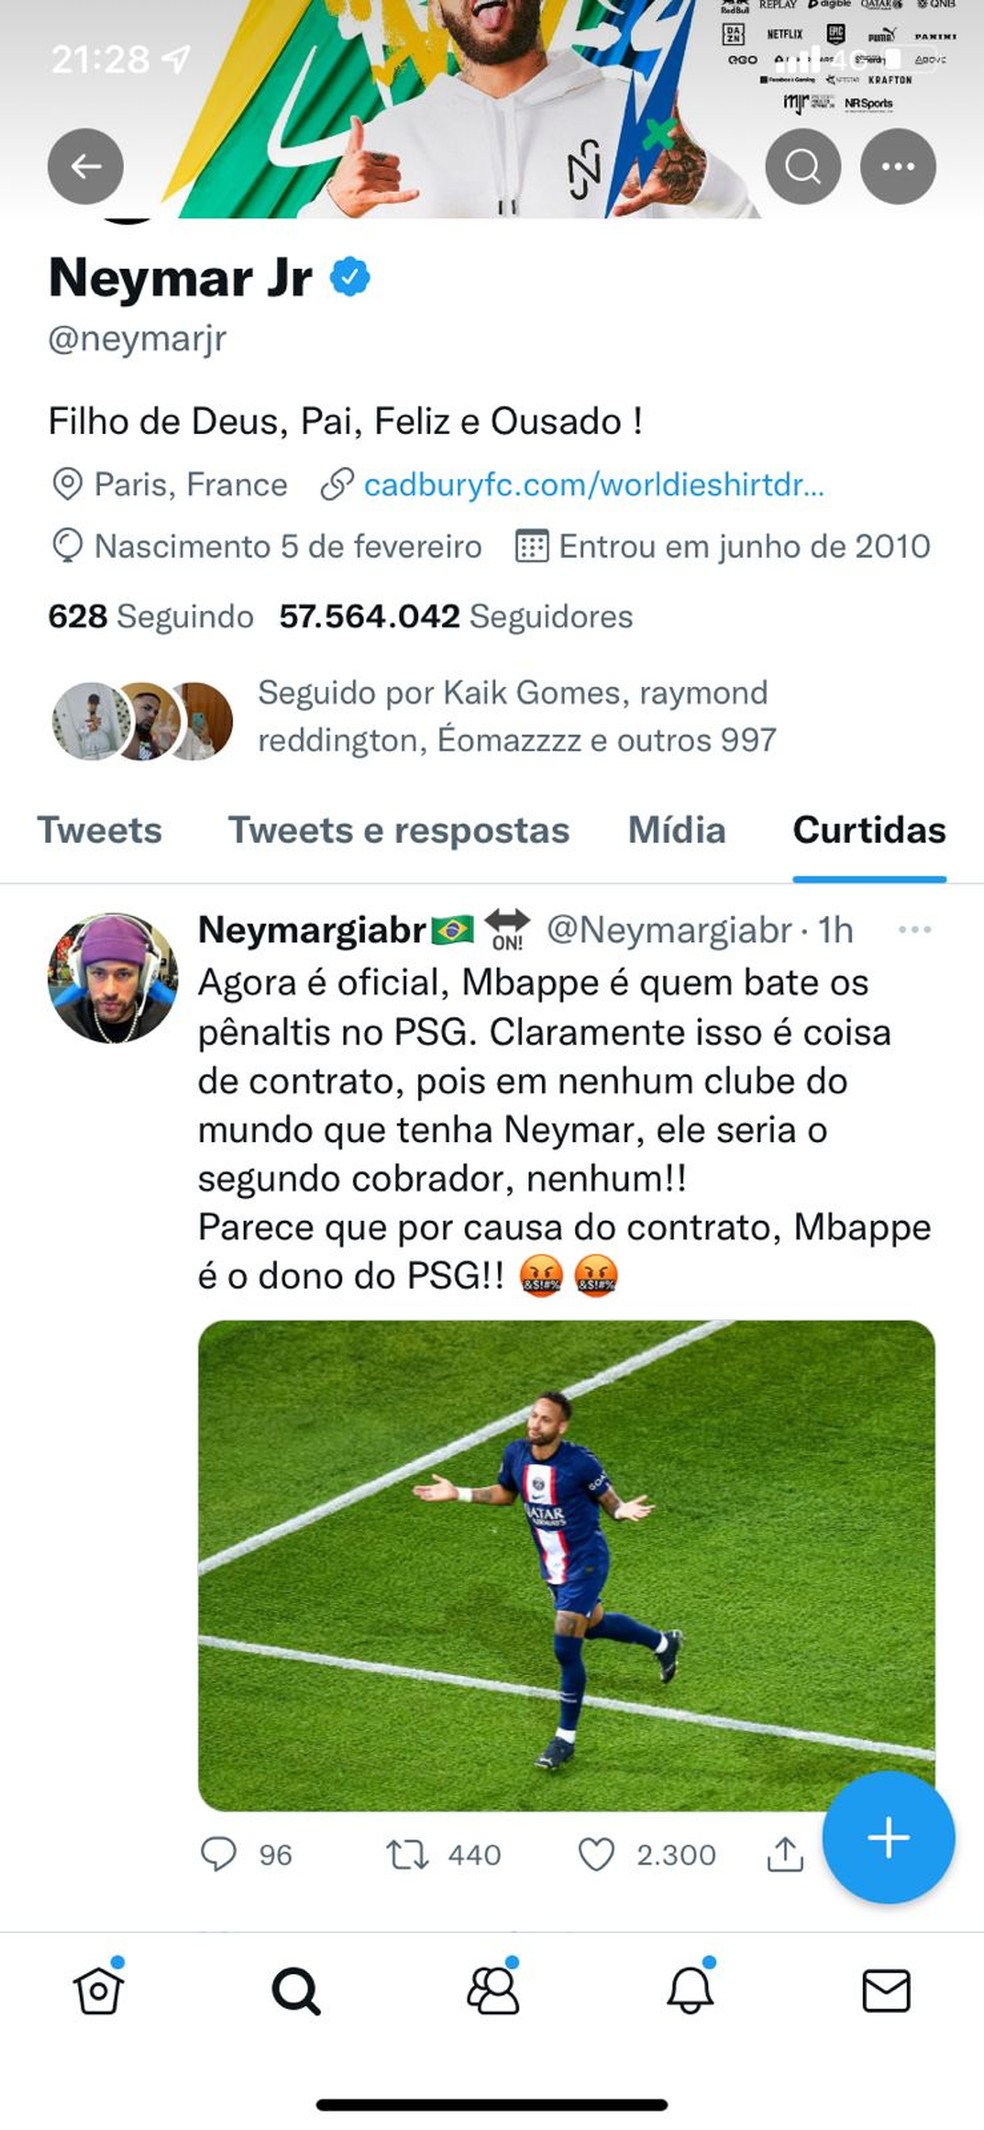 Postagem com crítica a Mbappé curtida pelo perfil oficial de Neymar — Foto: Reprodução